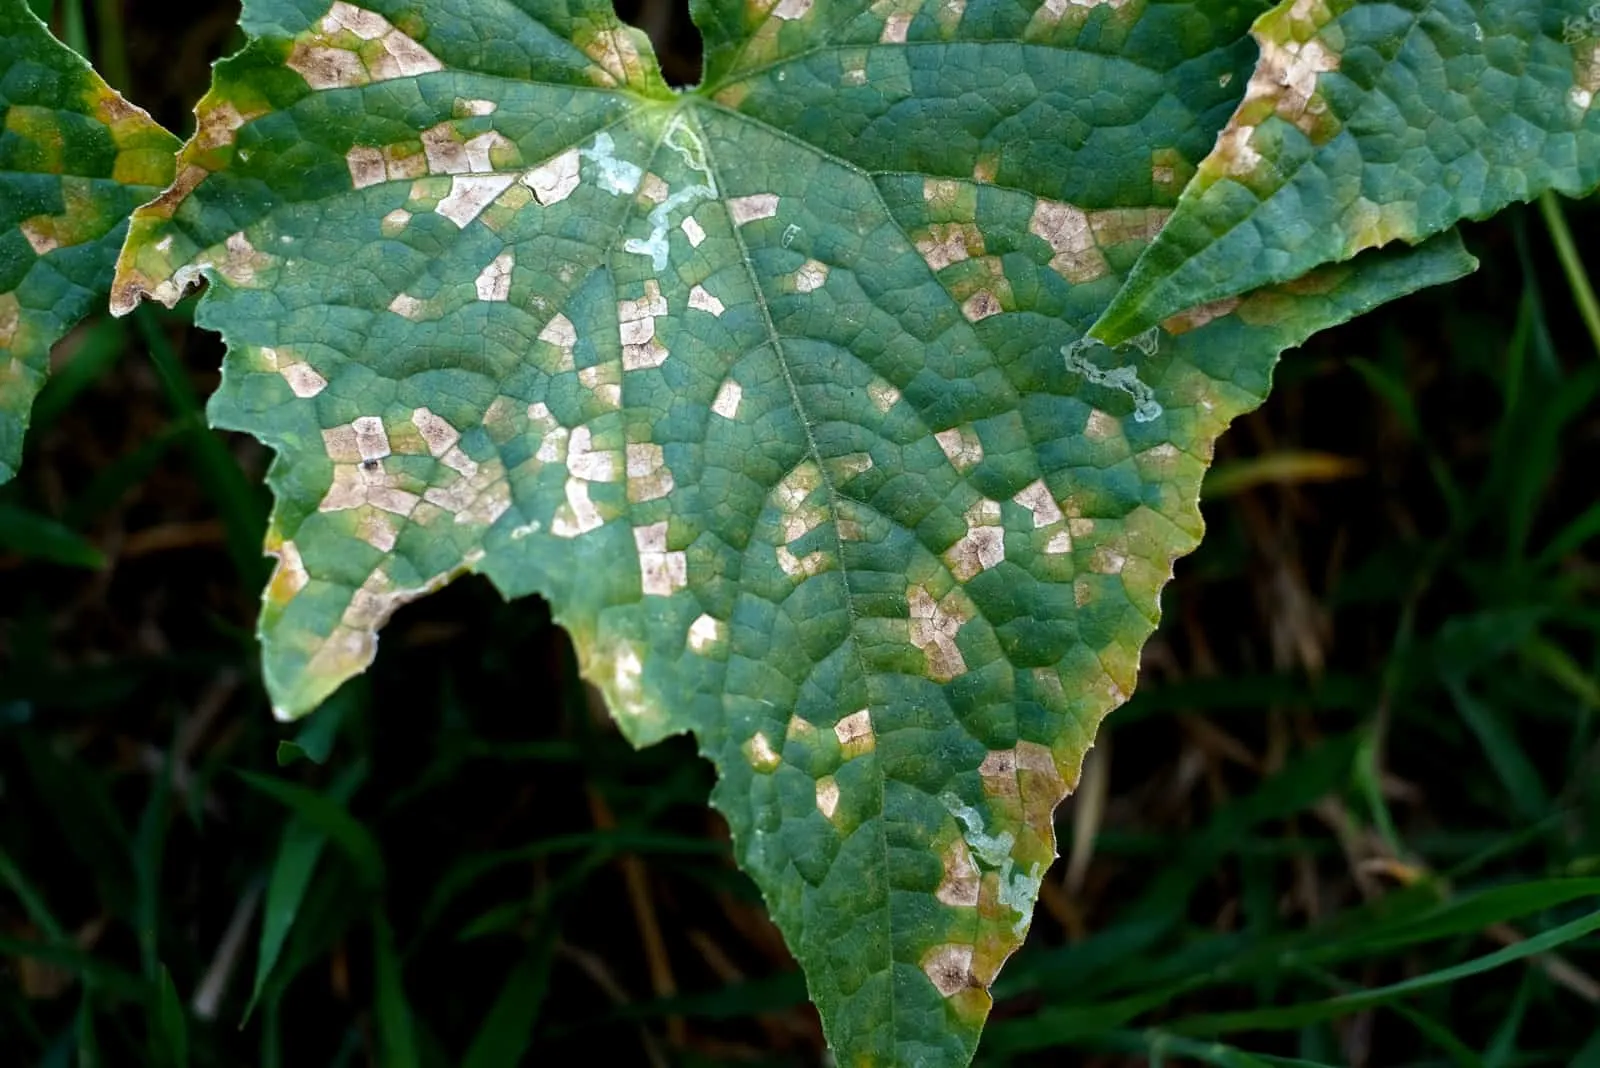 mosaic virus on cucumber leaves